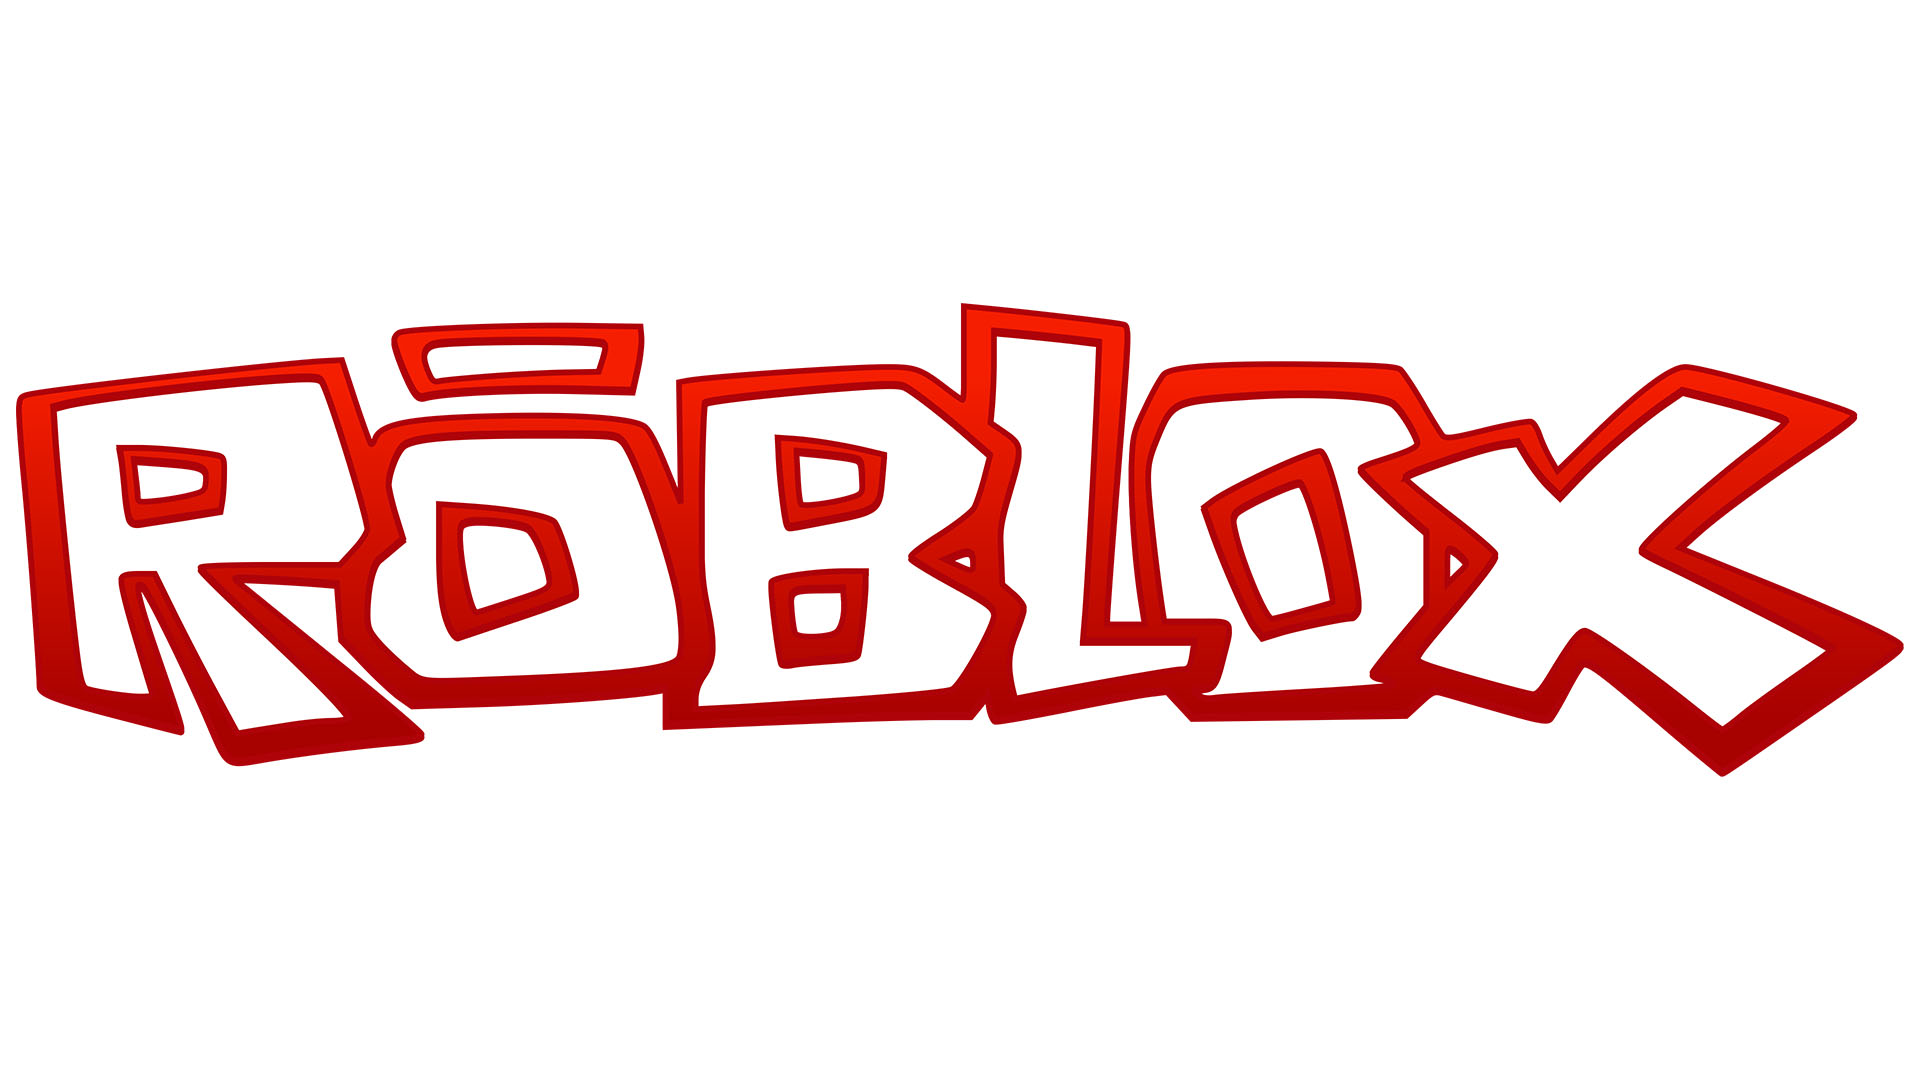 Design do logotipo Roblox - História, significado e evolução